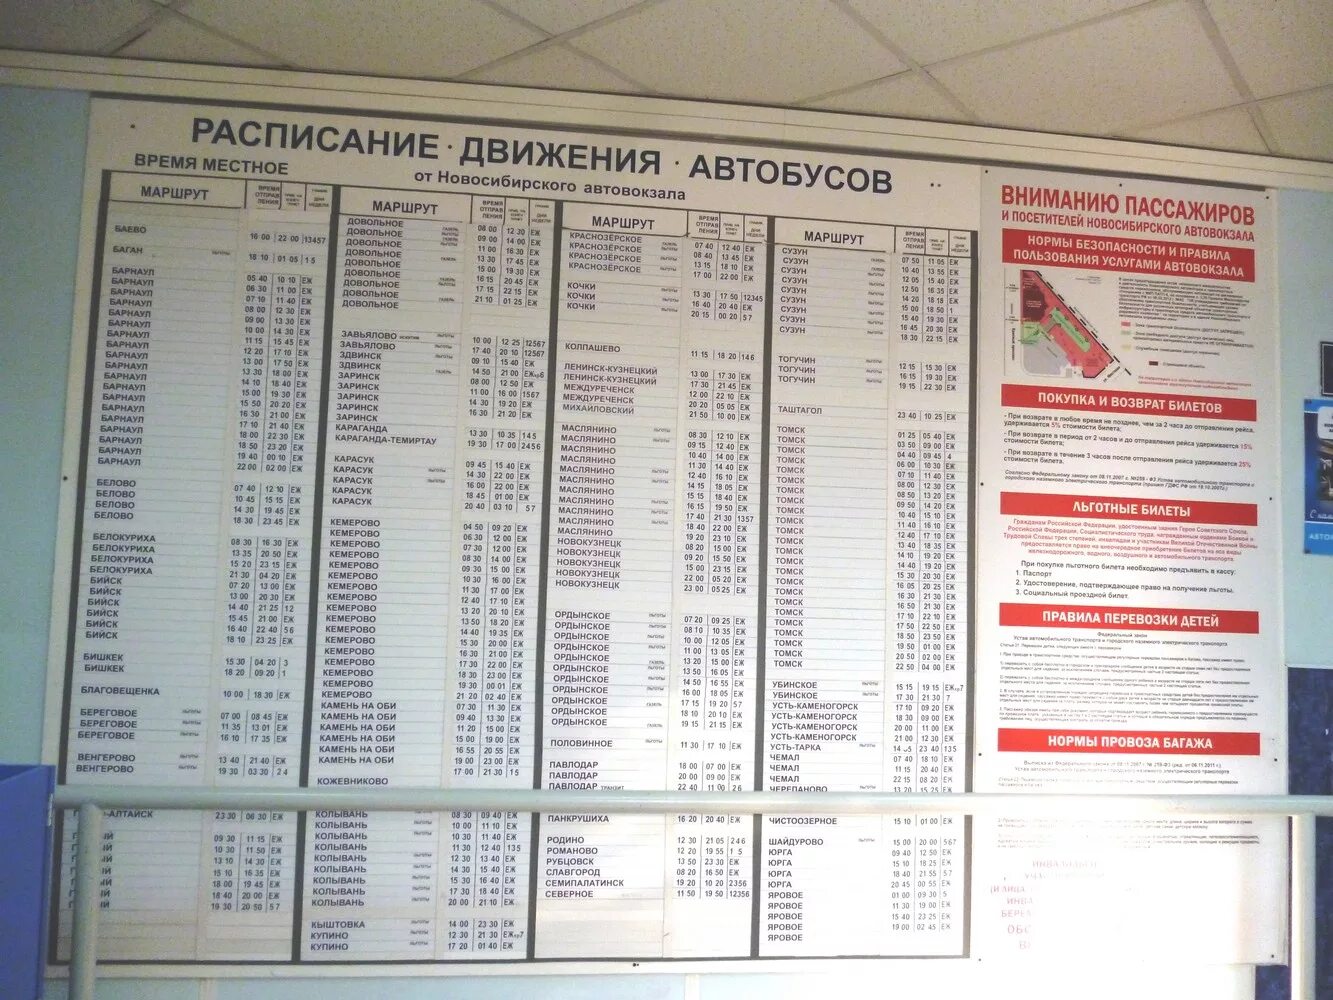 Автовокзал Новосибирск расписание. Расписание Новосибирского автовокзала автобусов. Автовокзал расписание автобусов. Расписание автобусов автовокзал но. Билеты на автобус алтайский край